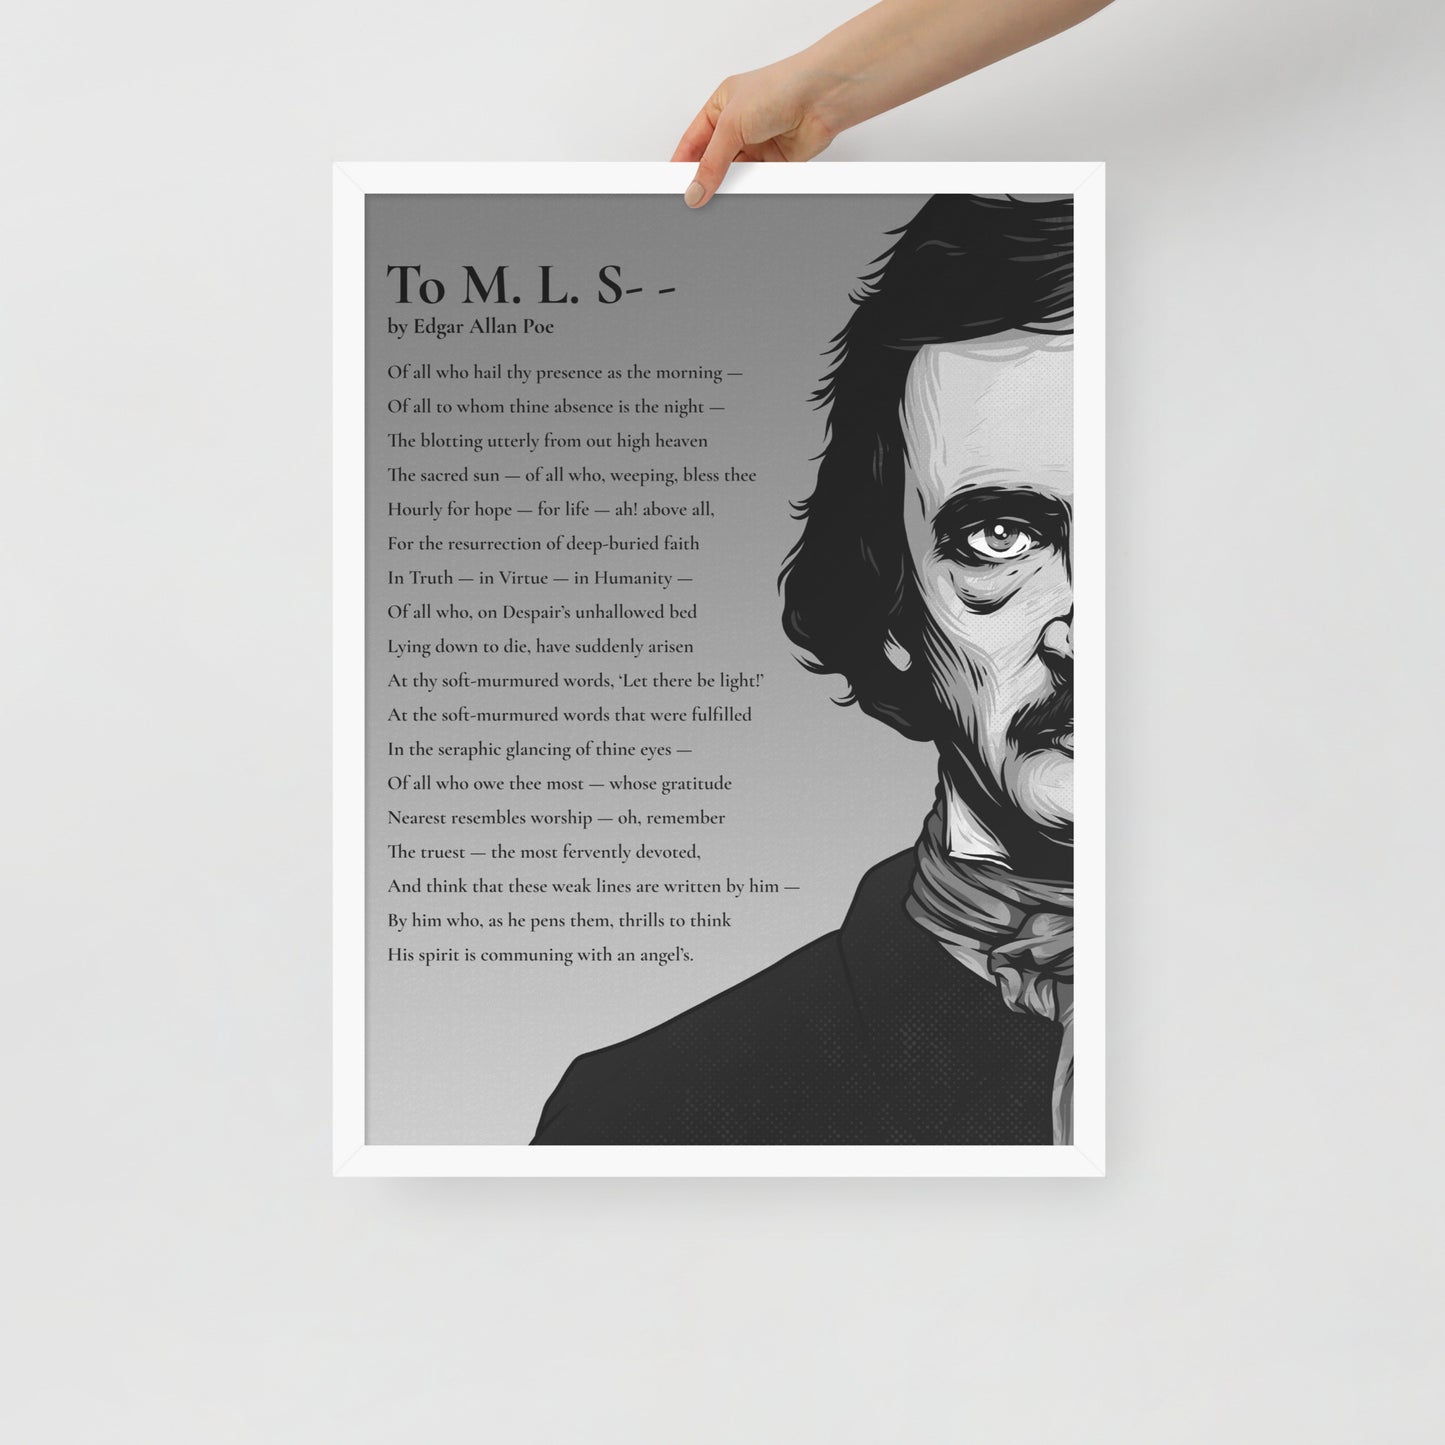 Edgar Allan Poe's 'To M. L. S--' Framed Matted Poster - 18 x 24 White Frame